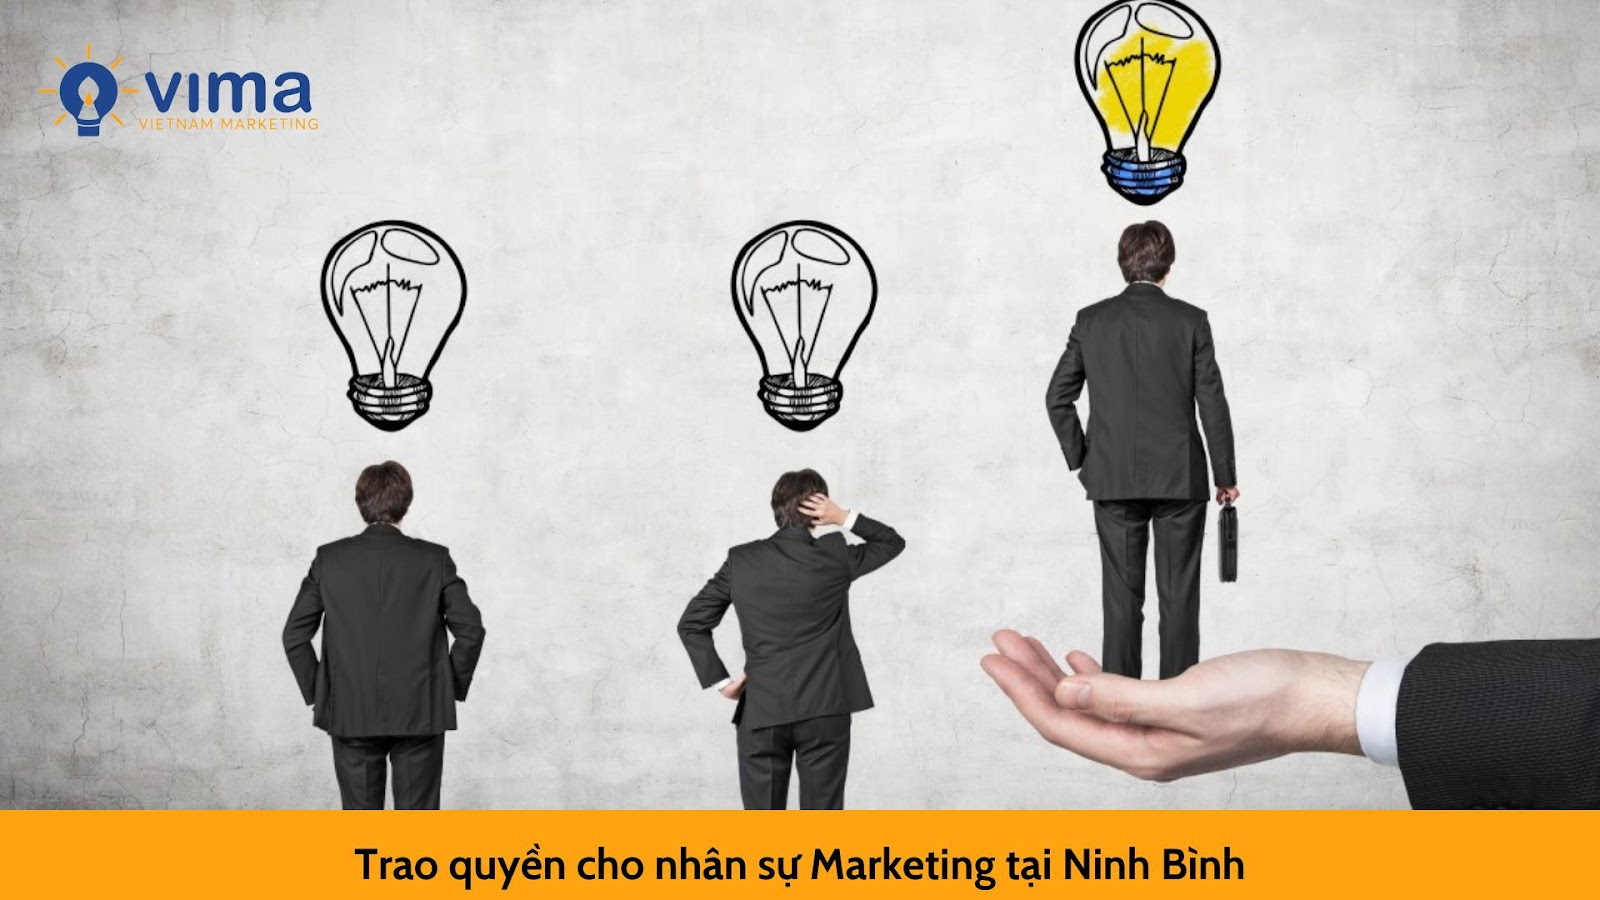 Trao quyền cho nhân sự Marketing tại Ninh Bình